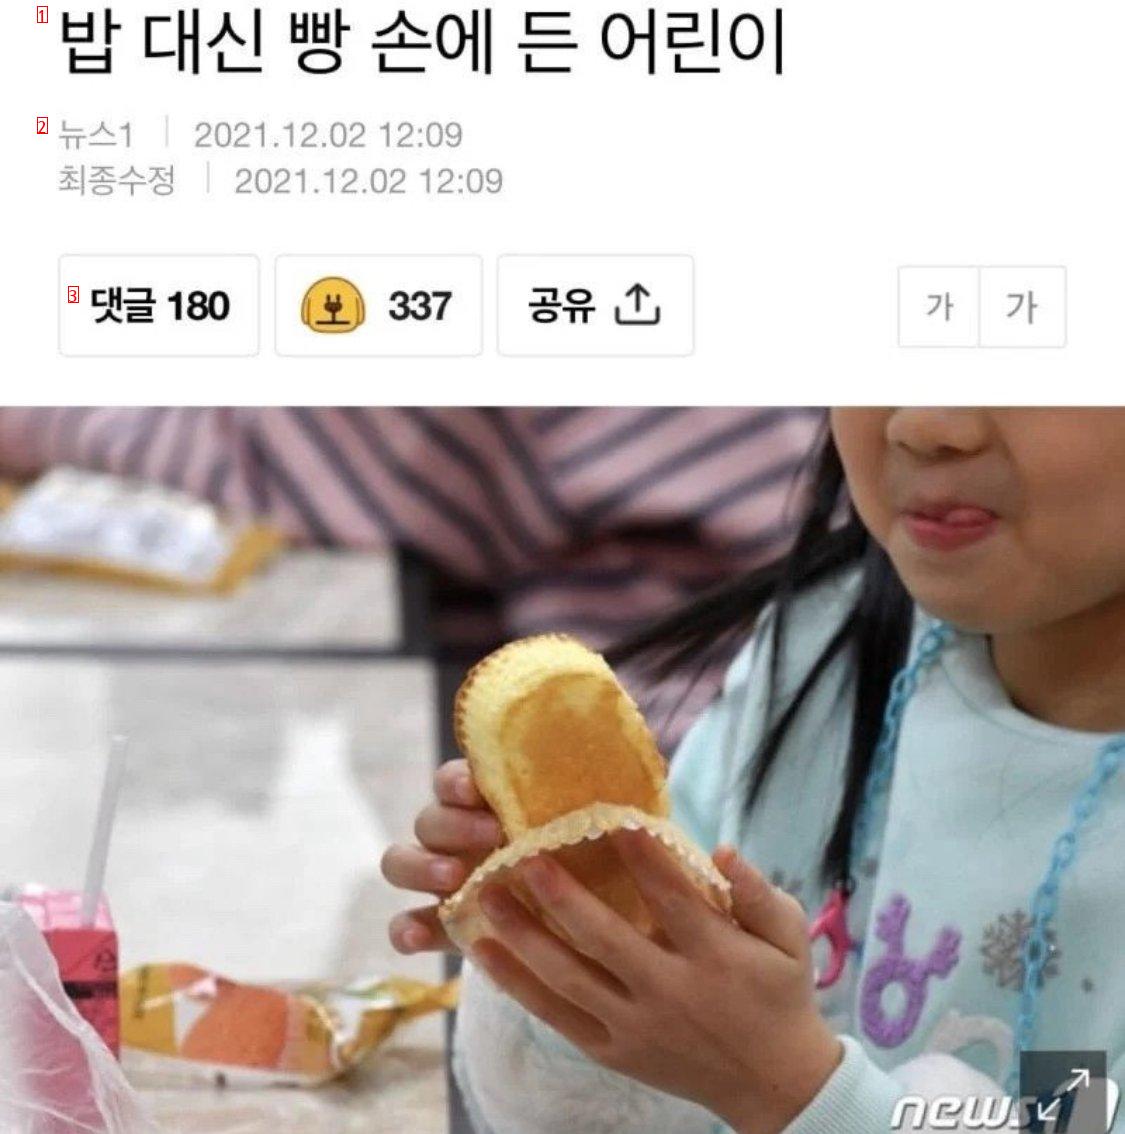 給食ストライキによってご飯の代わりにパンを食べるようになった子供たちTT